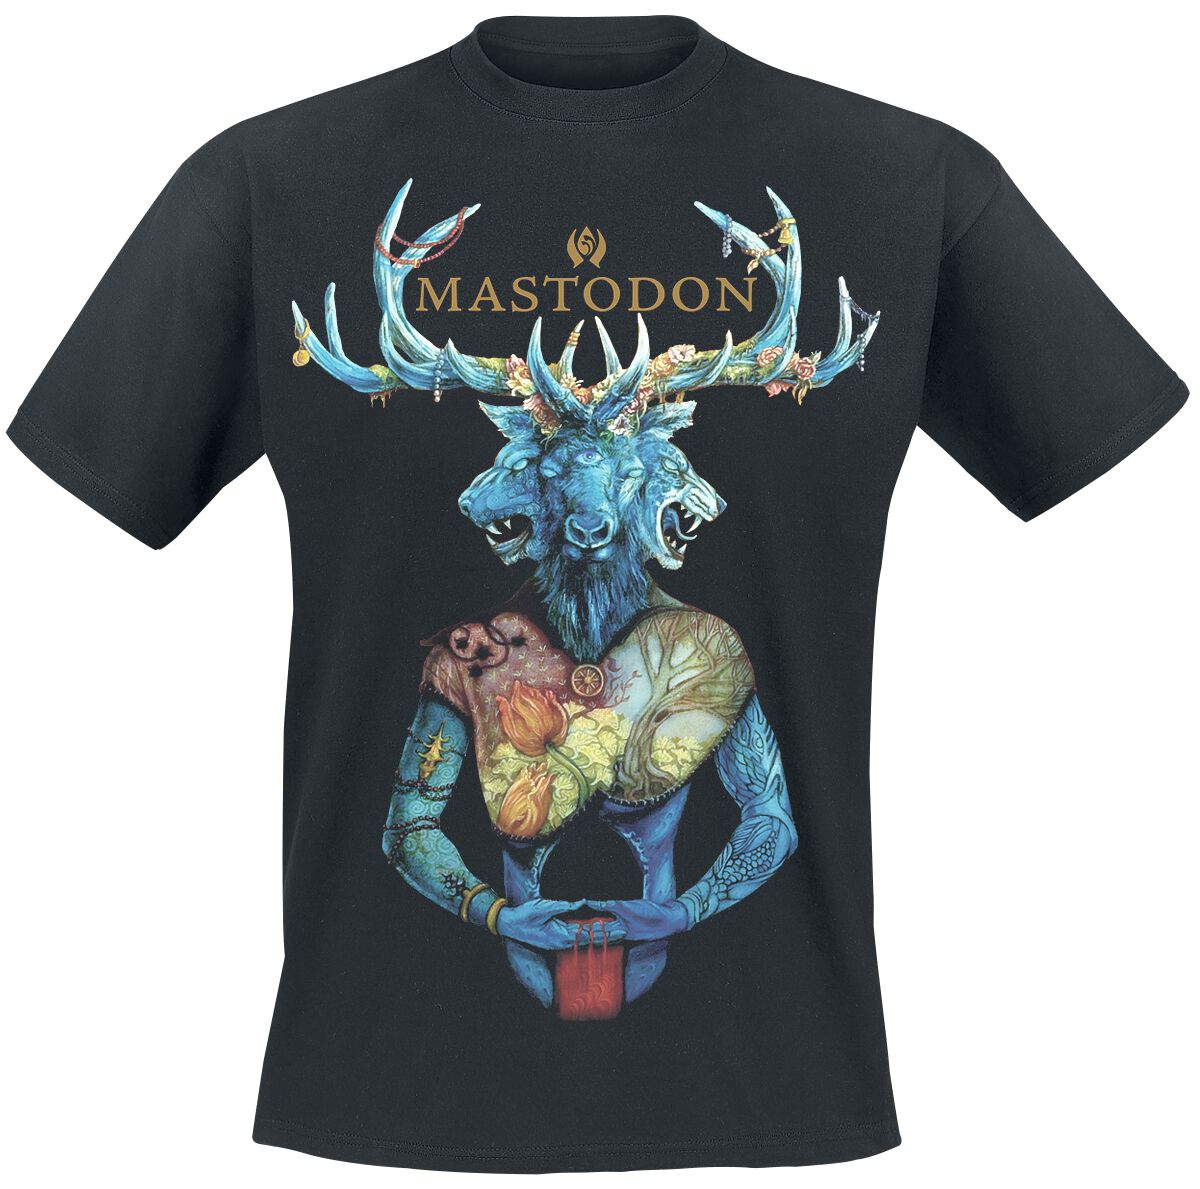 Mastodon T-Shirt - Blood mountain - S bis XXL - für Männer - Größe S - schwarz  - Lizenziertes Merchandise! von Mastodon